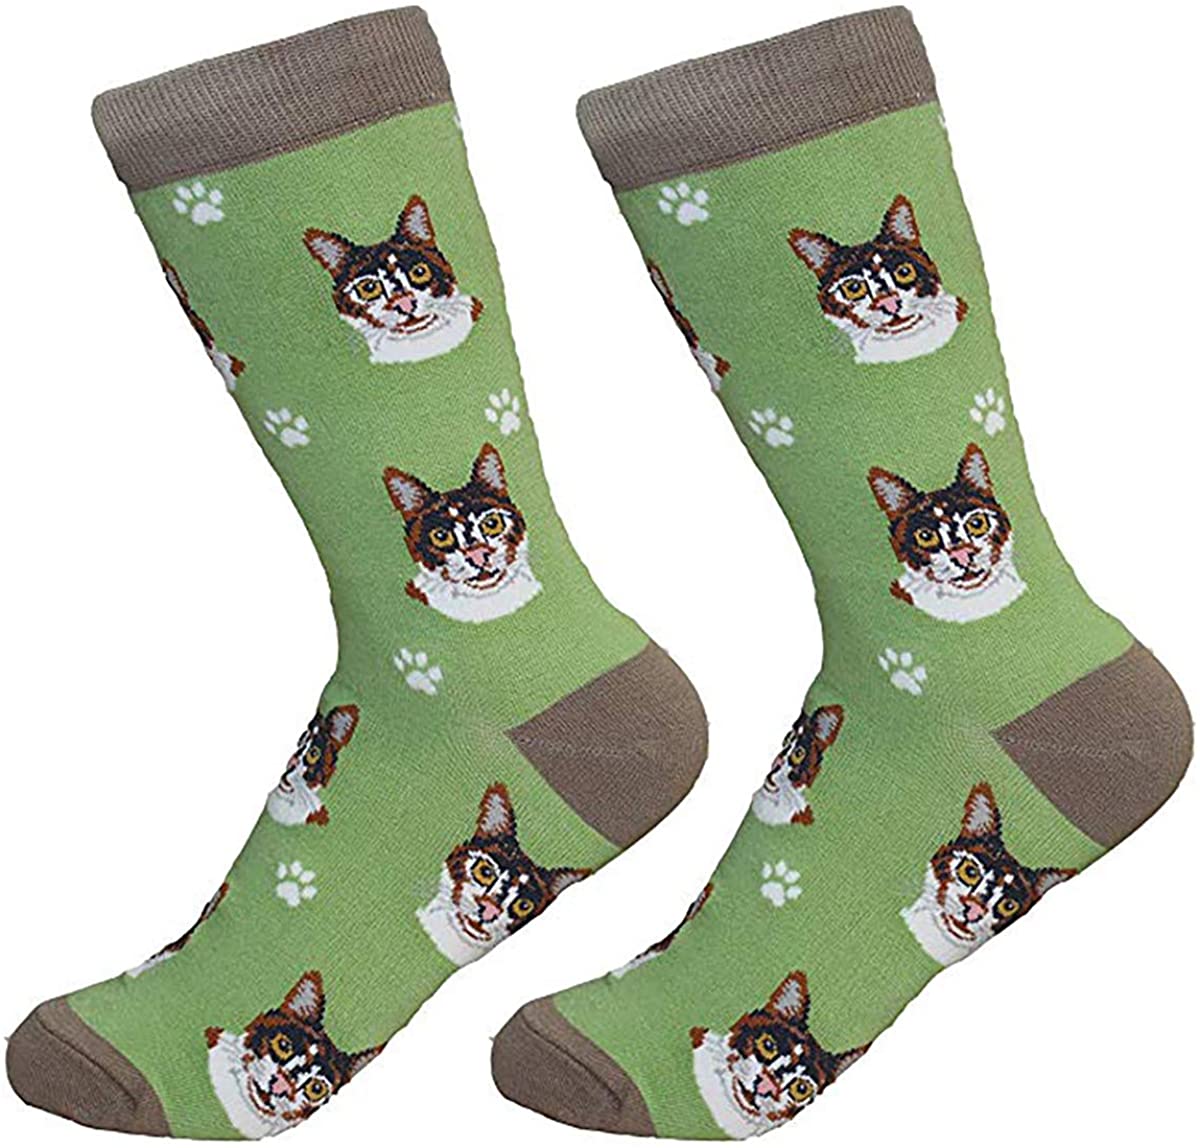 Calico Cat Socks